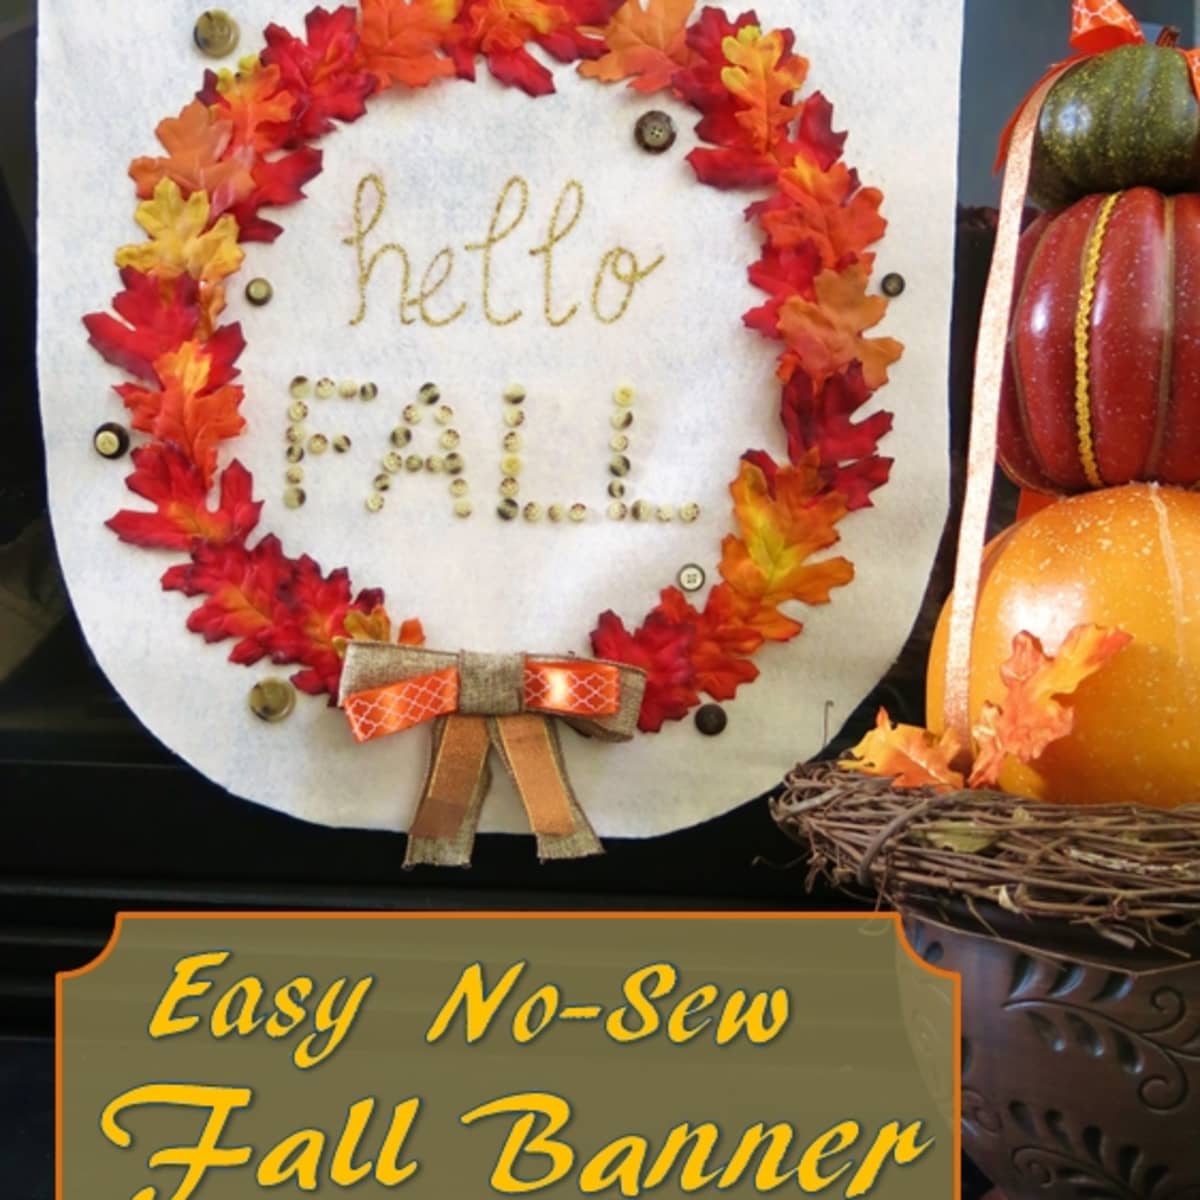 Festive Fall Frame Wreath: DIY Craft Tutorial - FeltMagnet